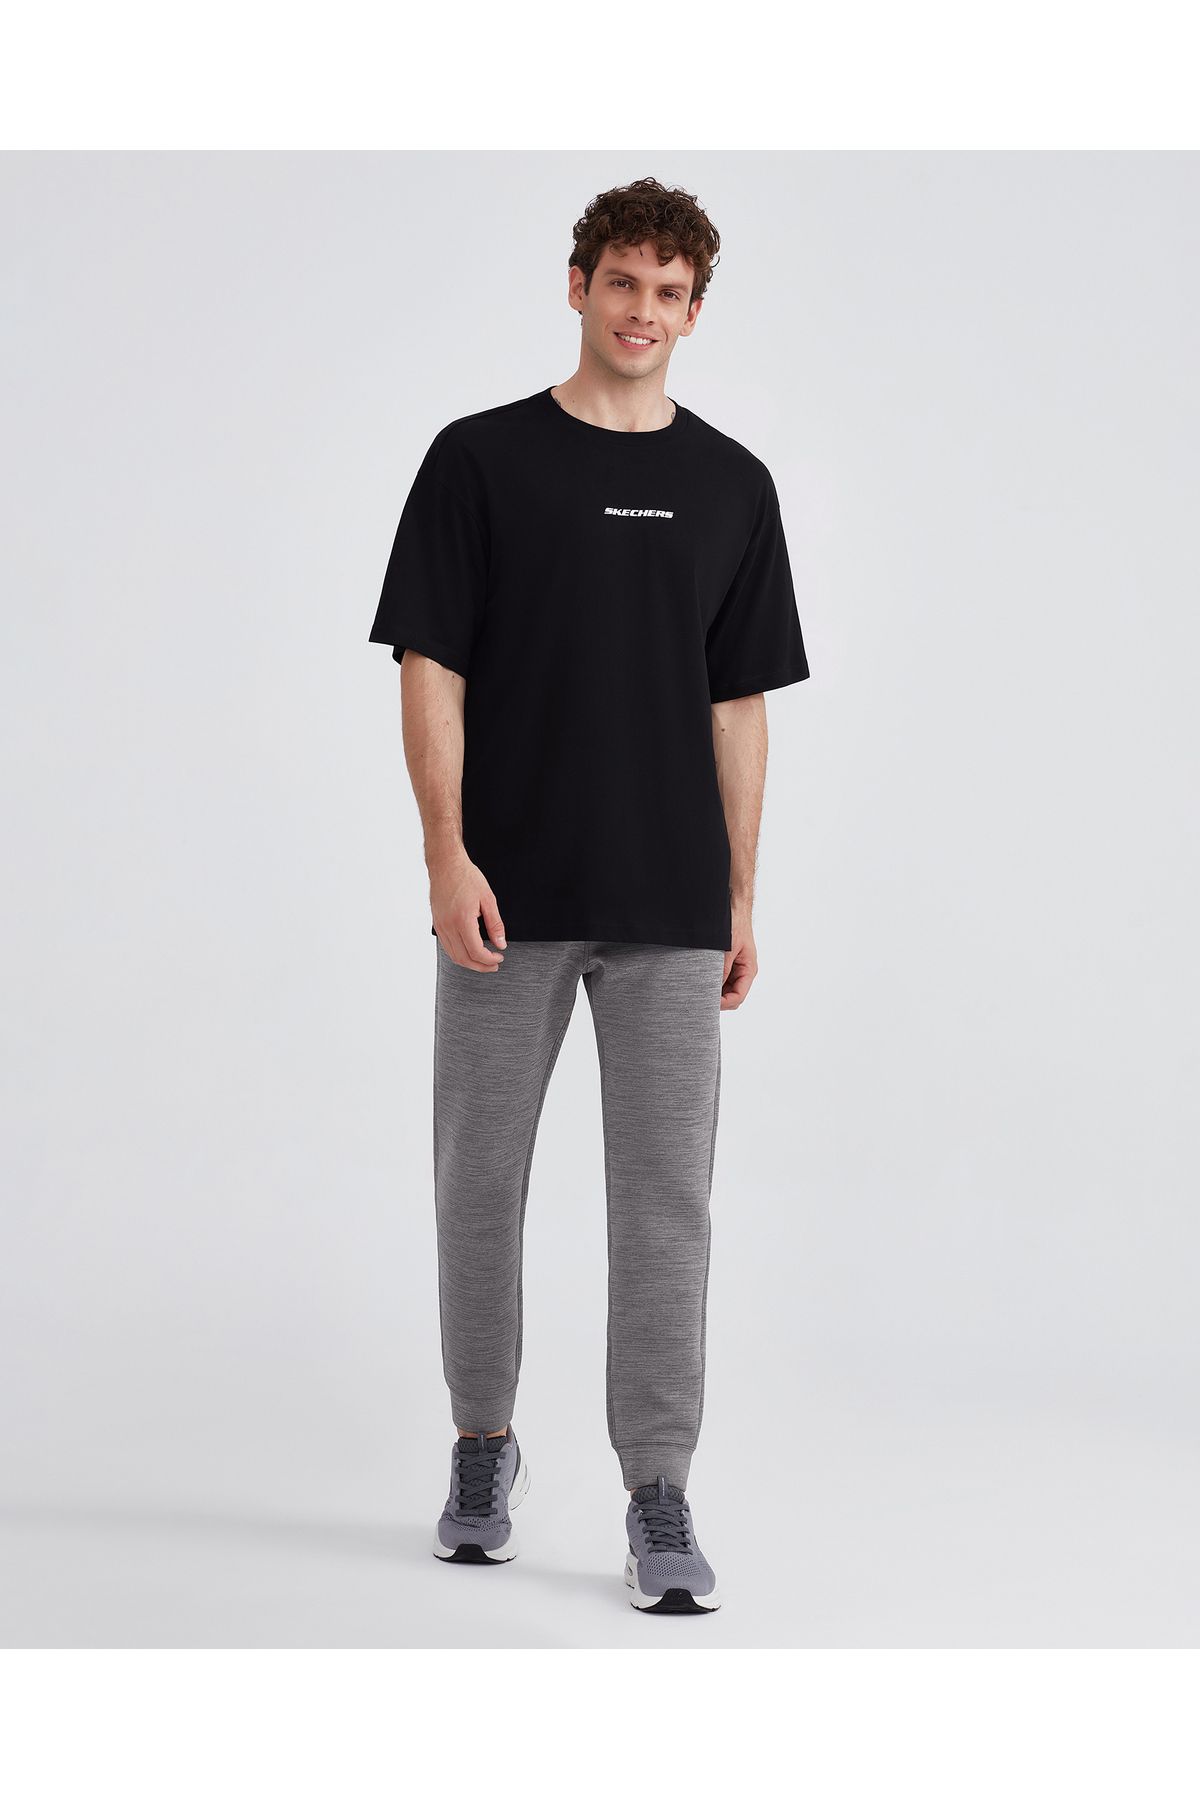 Skechers M Graphic Tee Oversize T-shirt Erkek Siyah Tshirt S232404-001